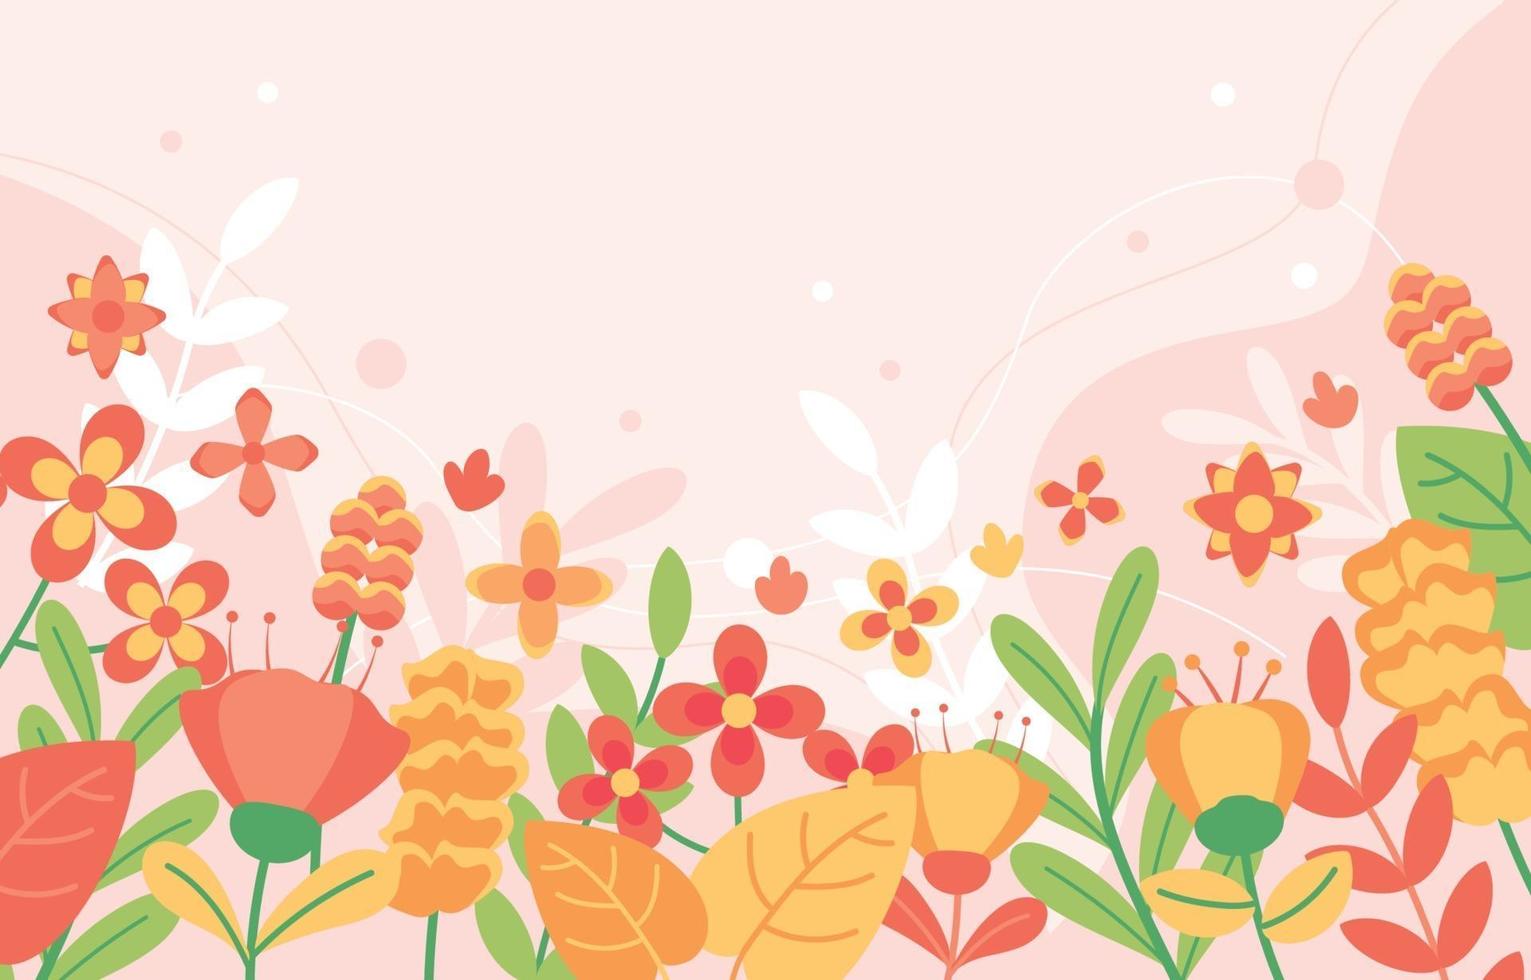 Spring Floral Flat Design Background vector